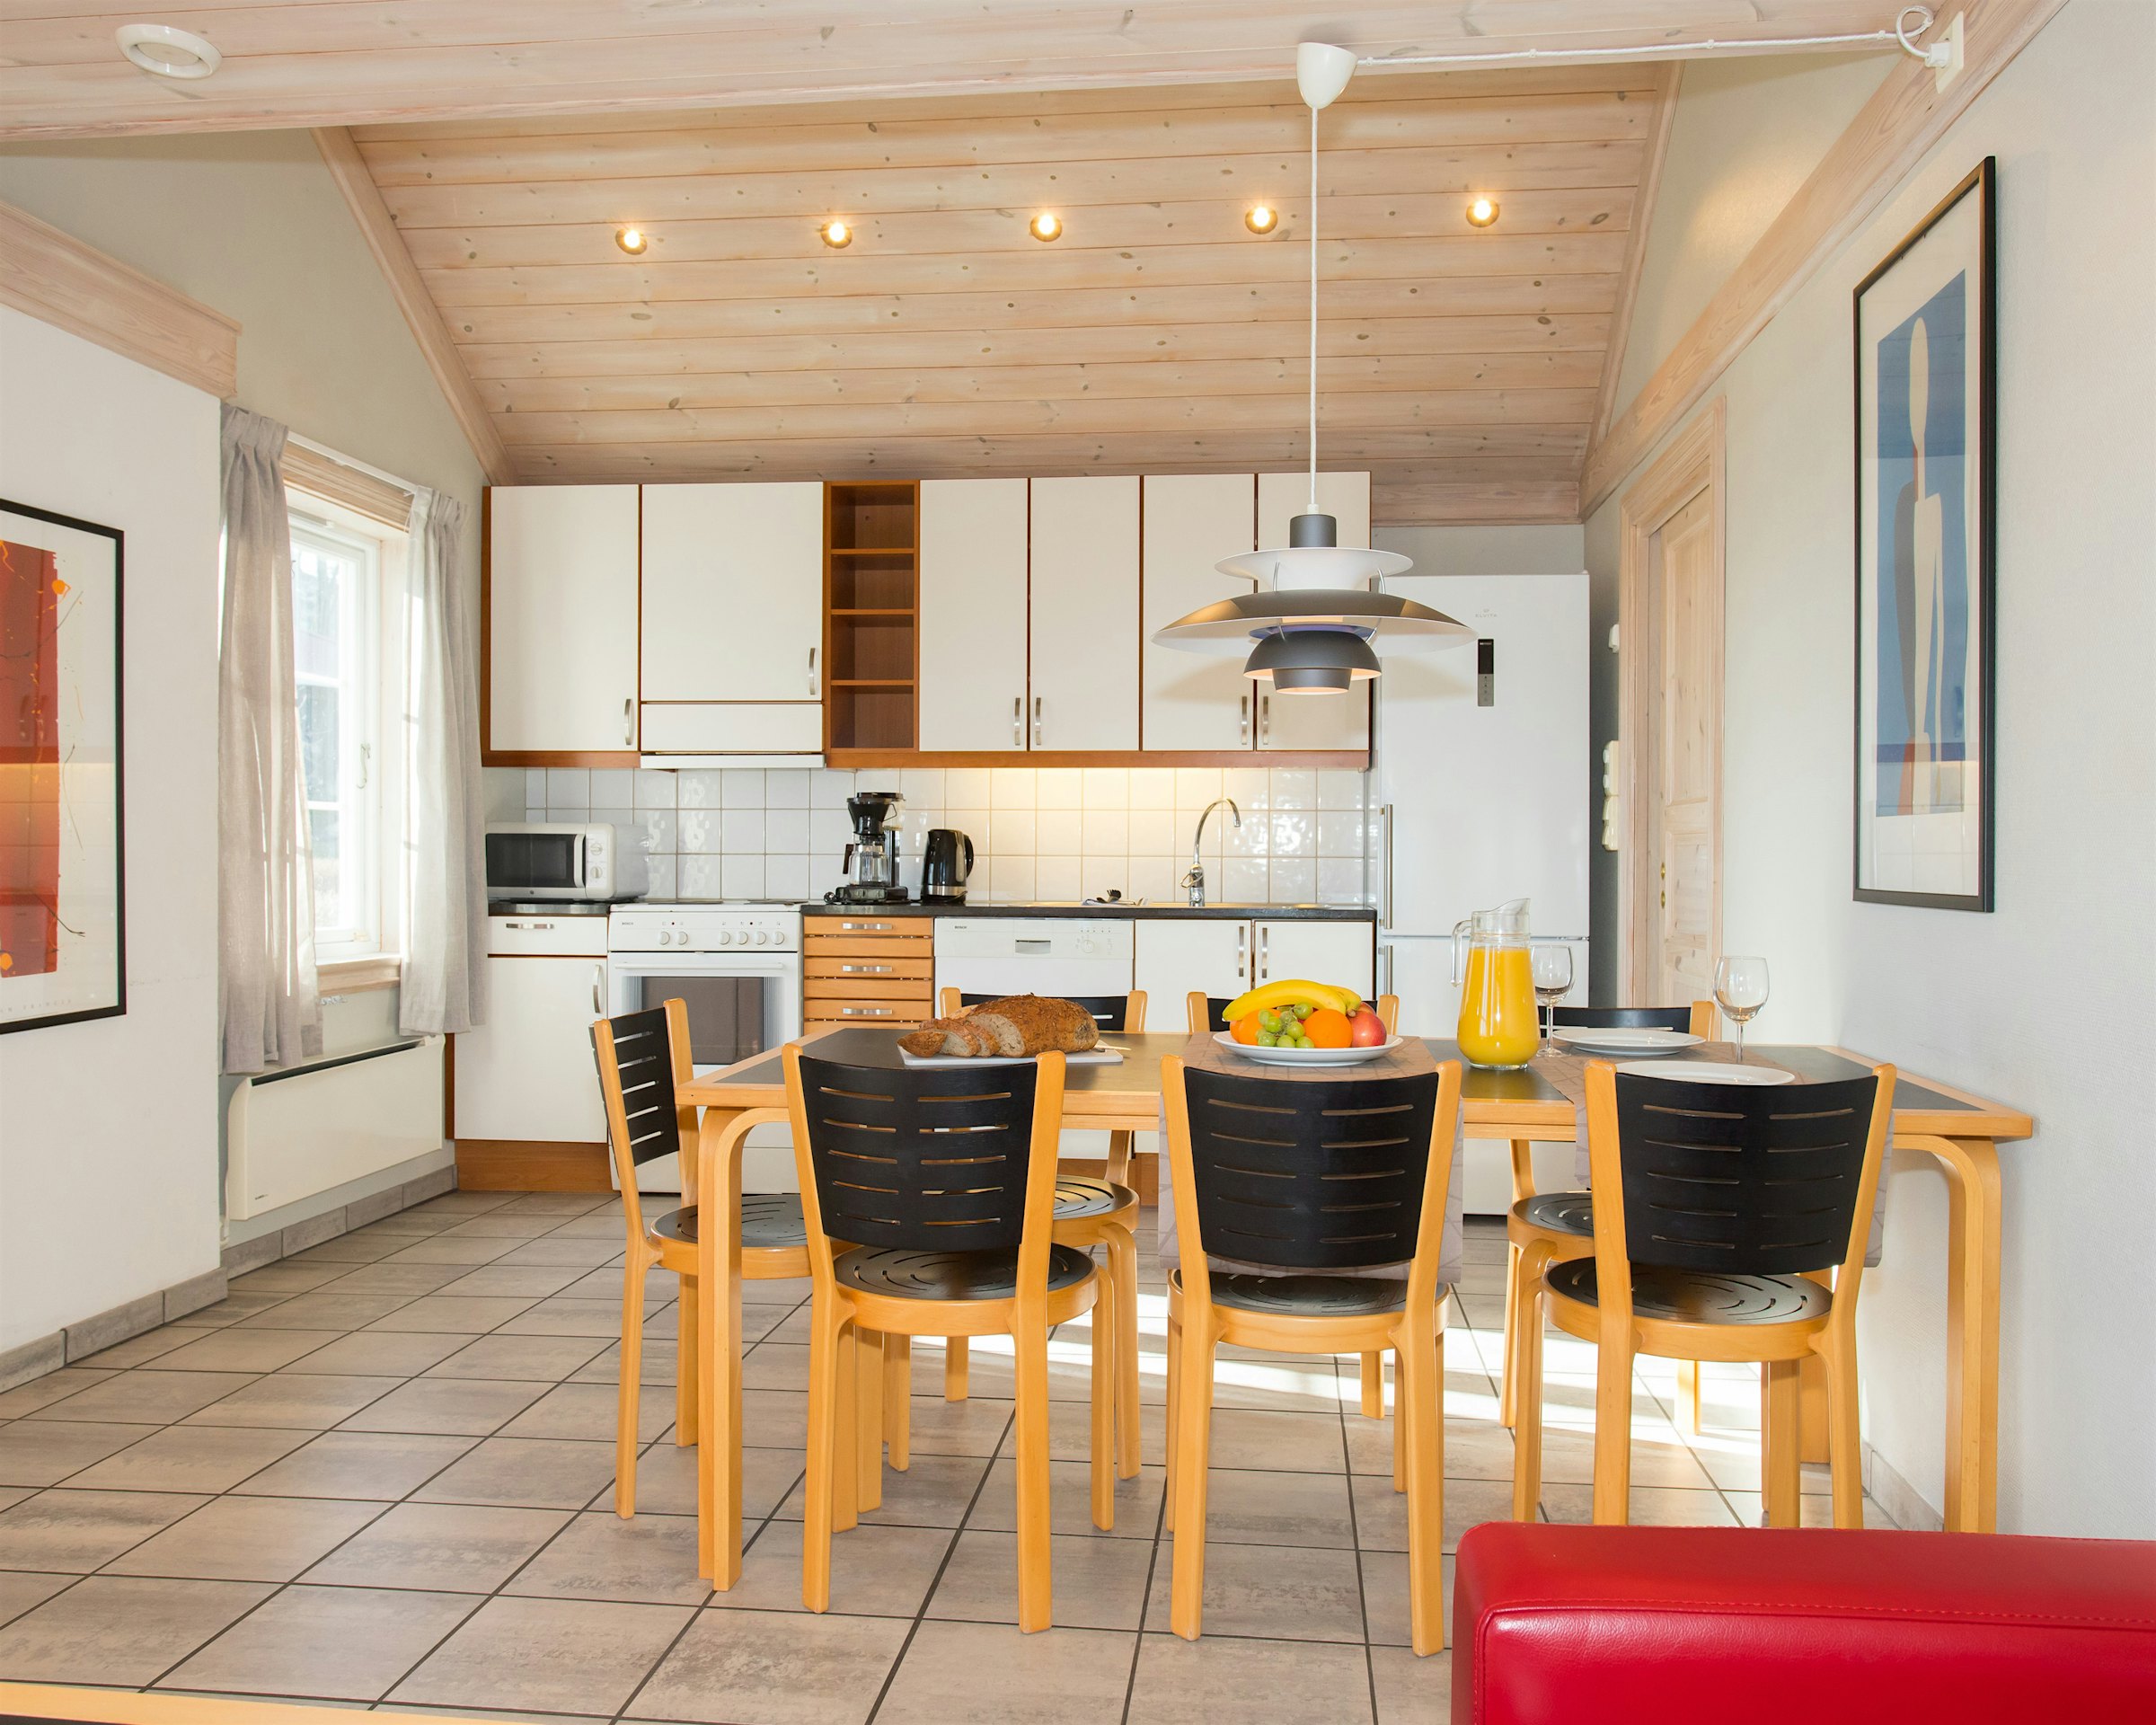 Großer offener Raum mit Küche und Esstisch. Der Tisch ist mit Obstplatten, Brot und Getränken gedeckt. Foto